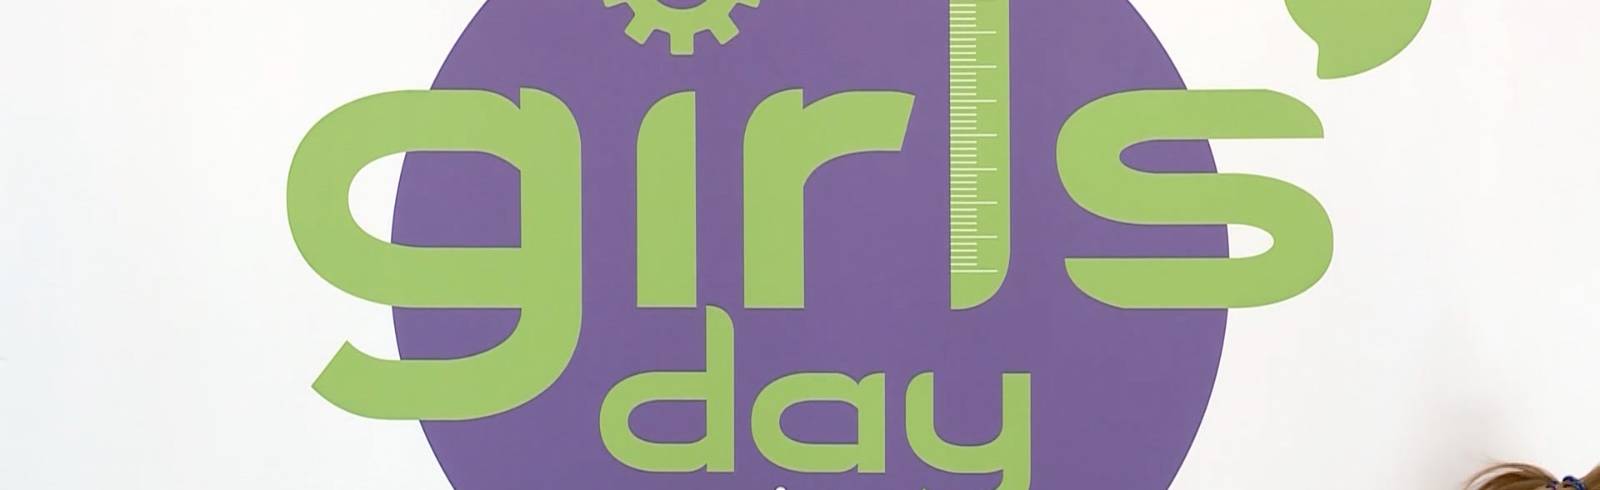 Girls' Day im Bundeskanzleramt